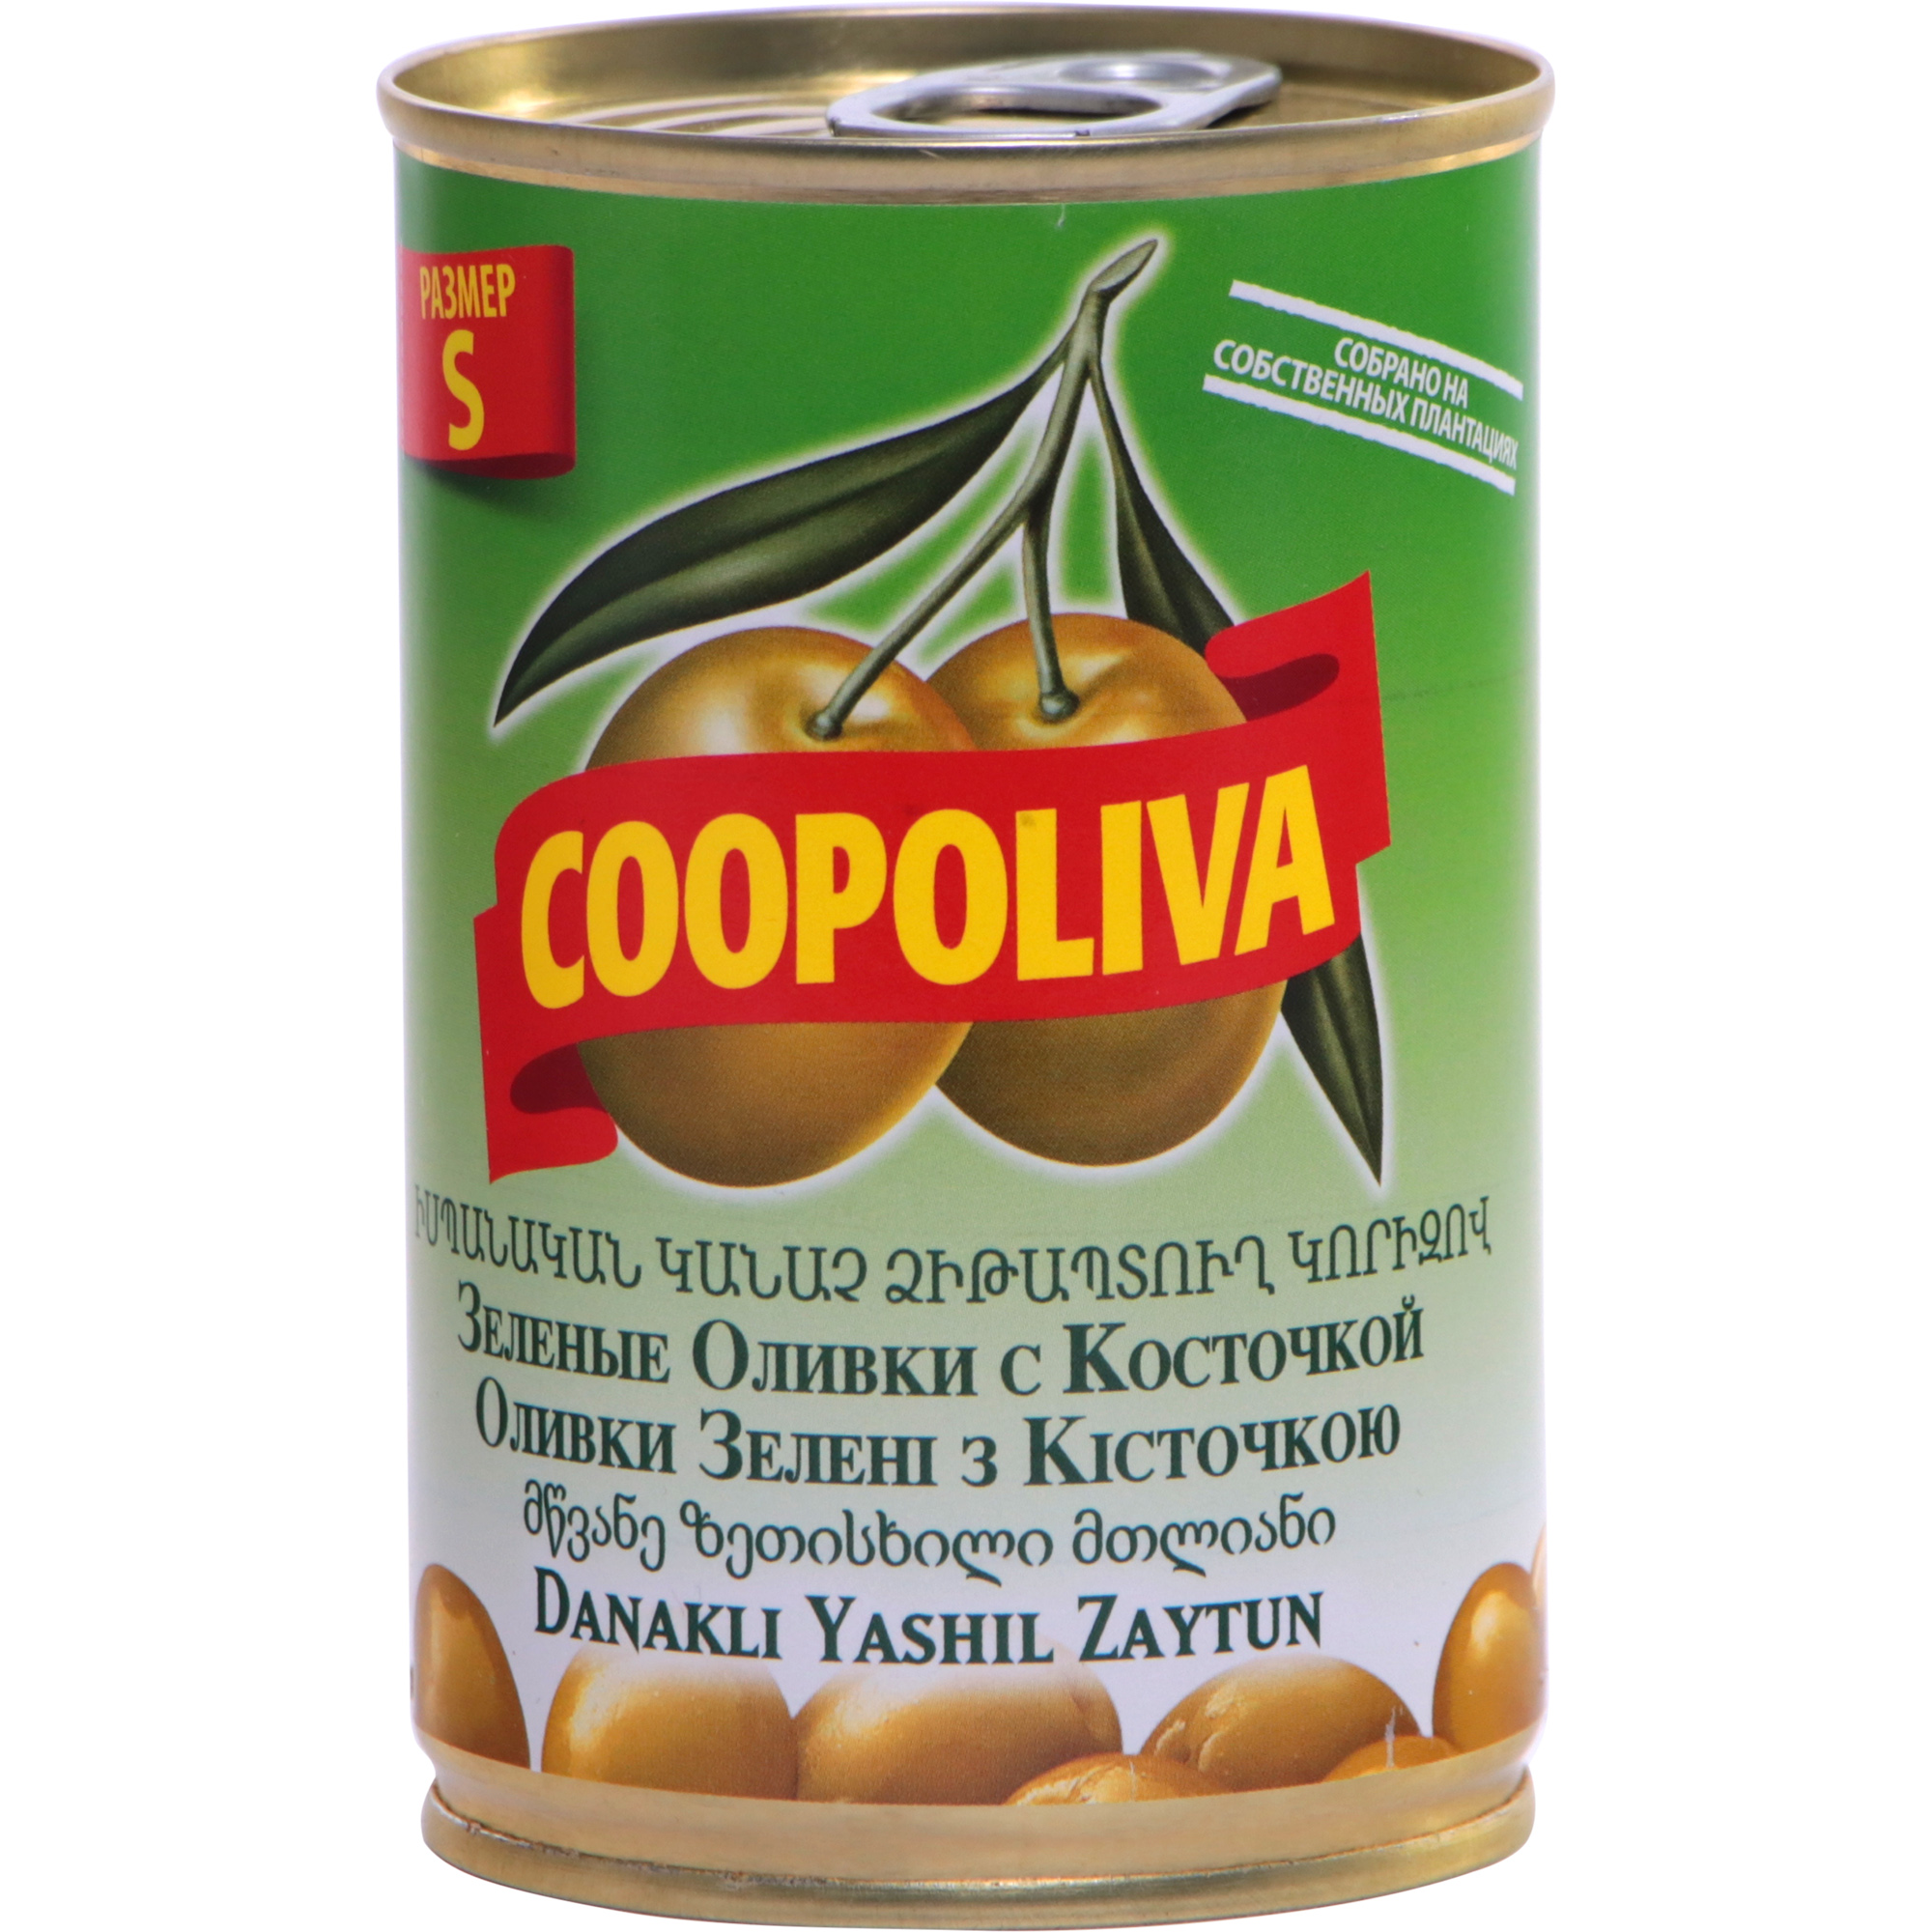 Оливки COOPOLIVA S с косточкой, 300 г оливки coopoliva без косточки 350 г